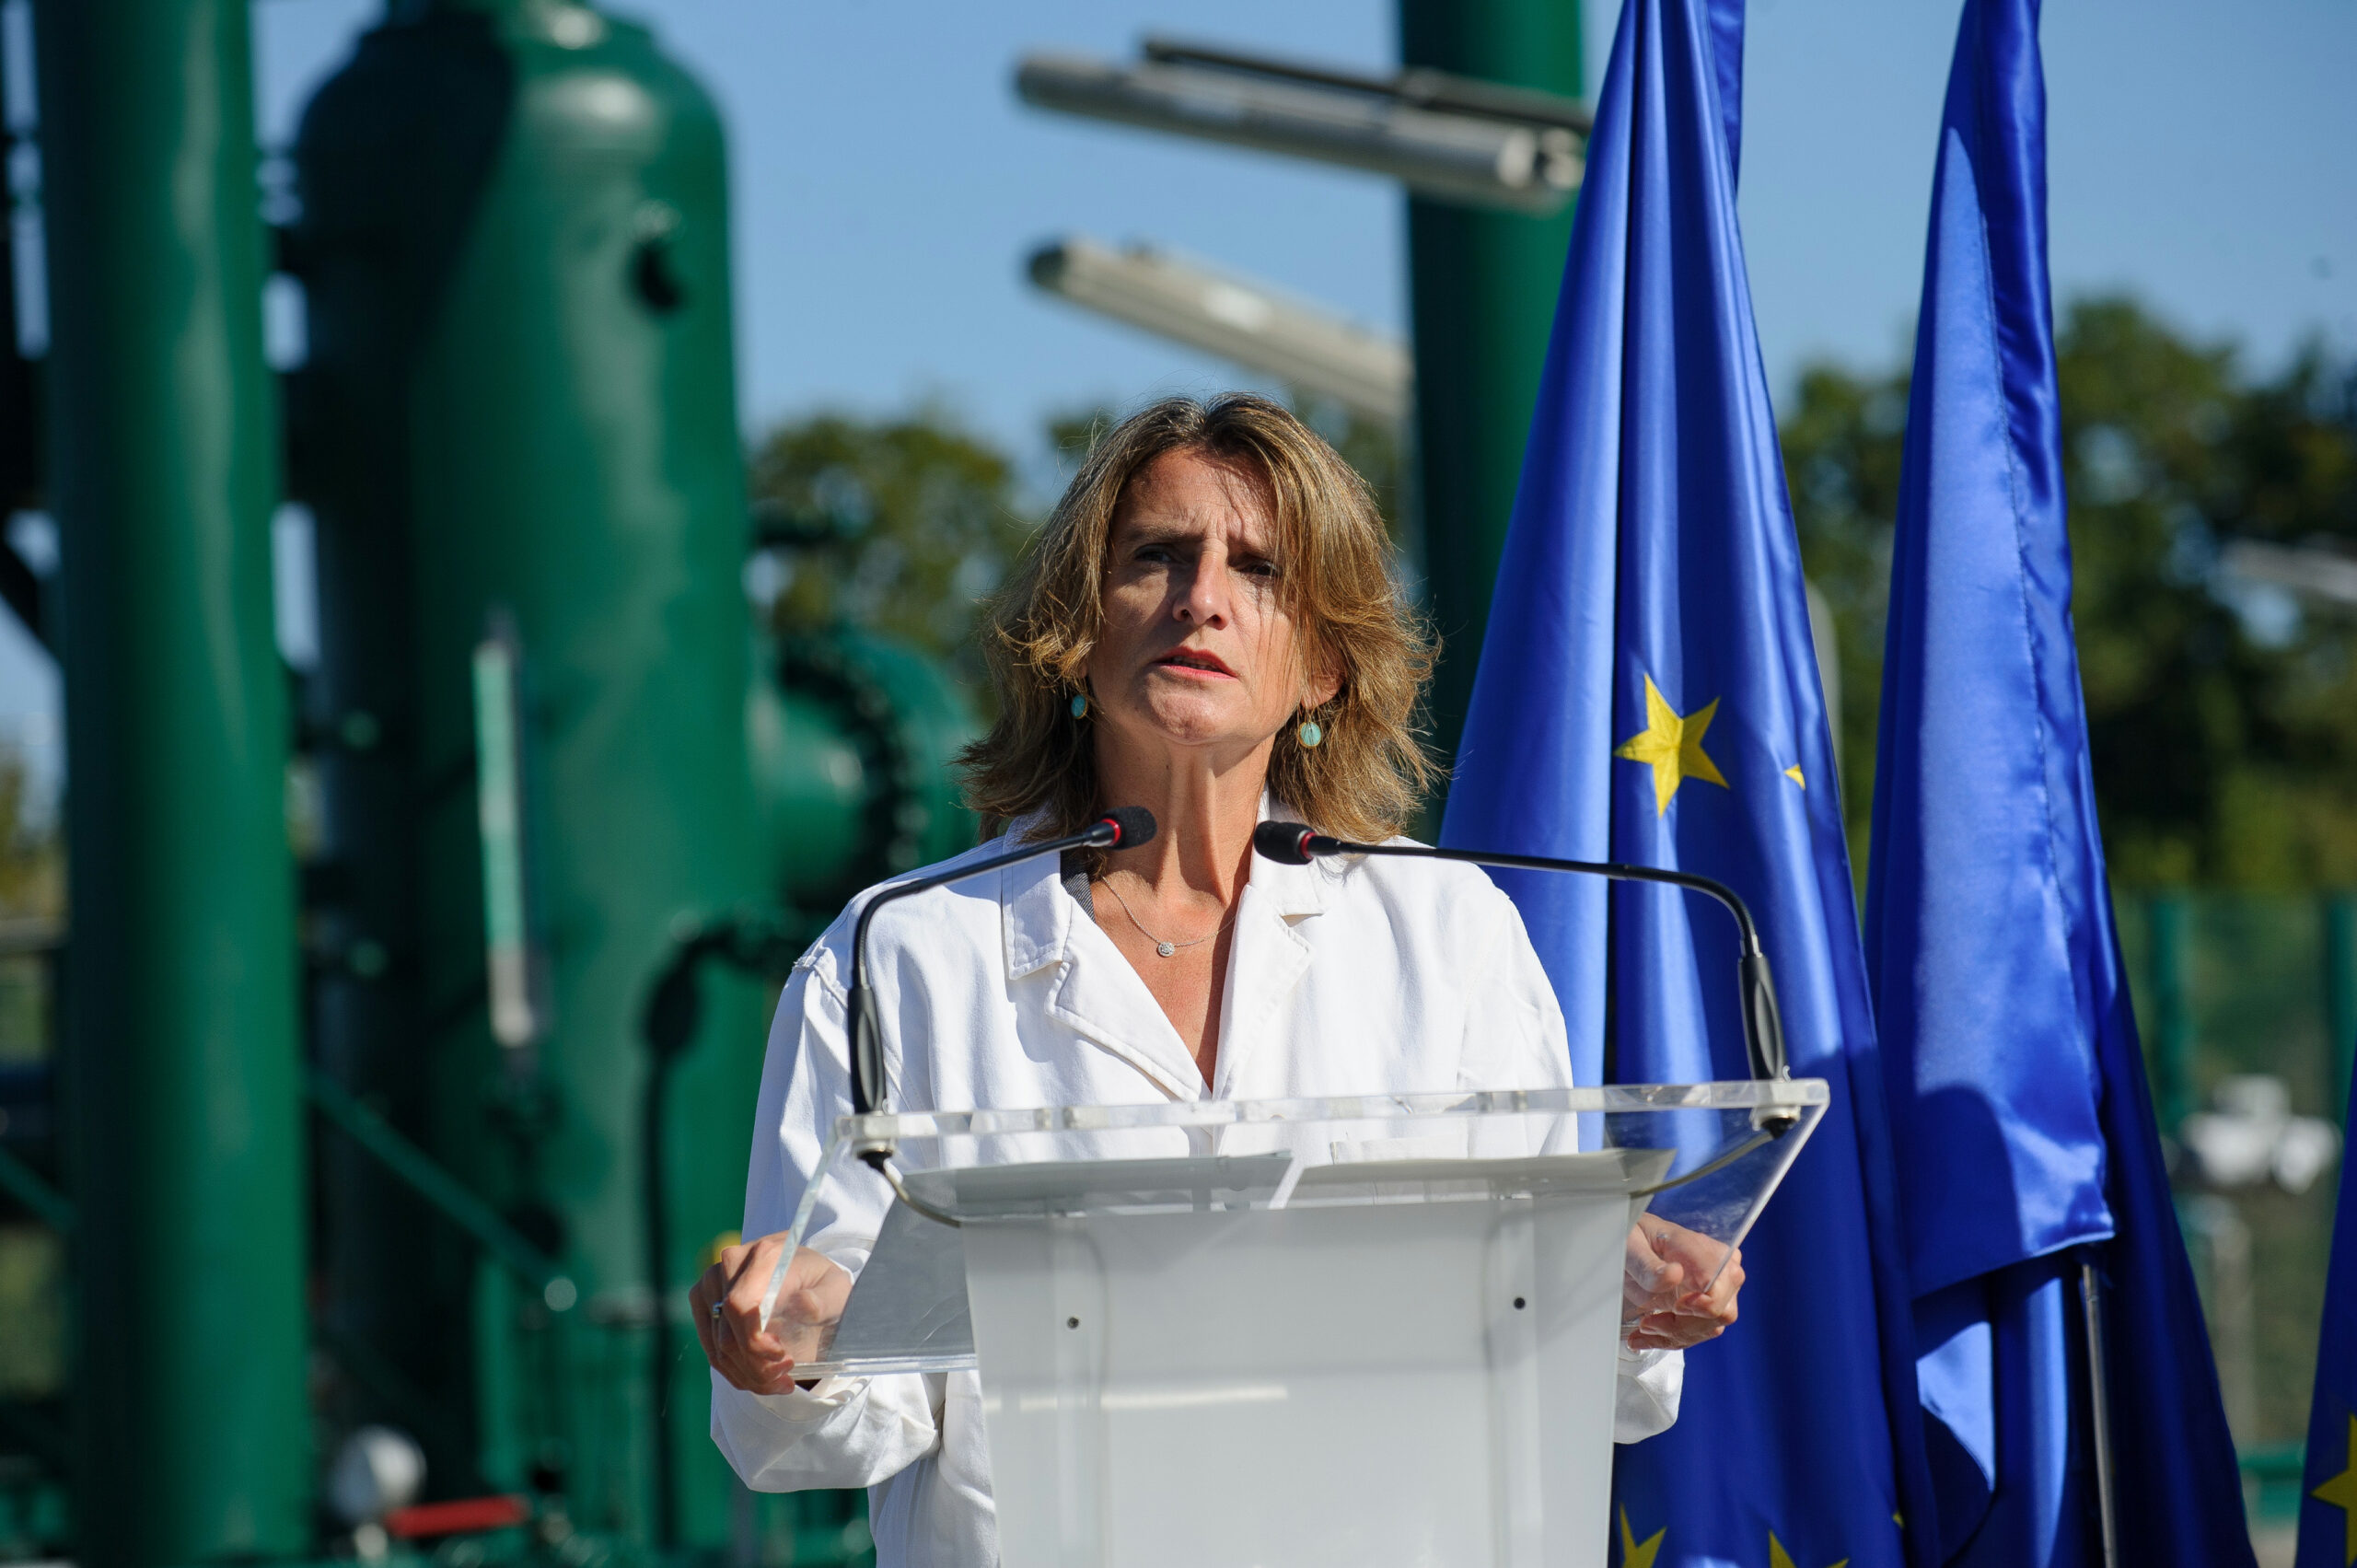 Ribera rappelle à la France que la question du gaz n’est pas « bilatérale » et concerne la sécurité énergétique de l’Europe